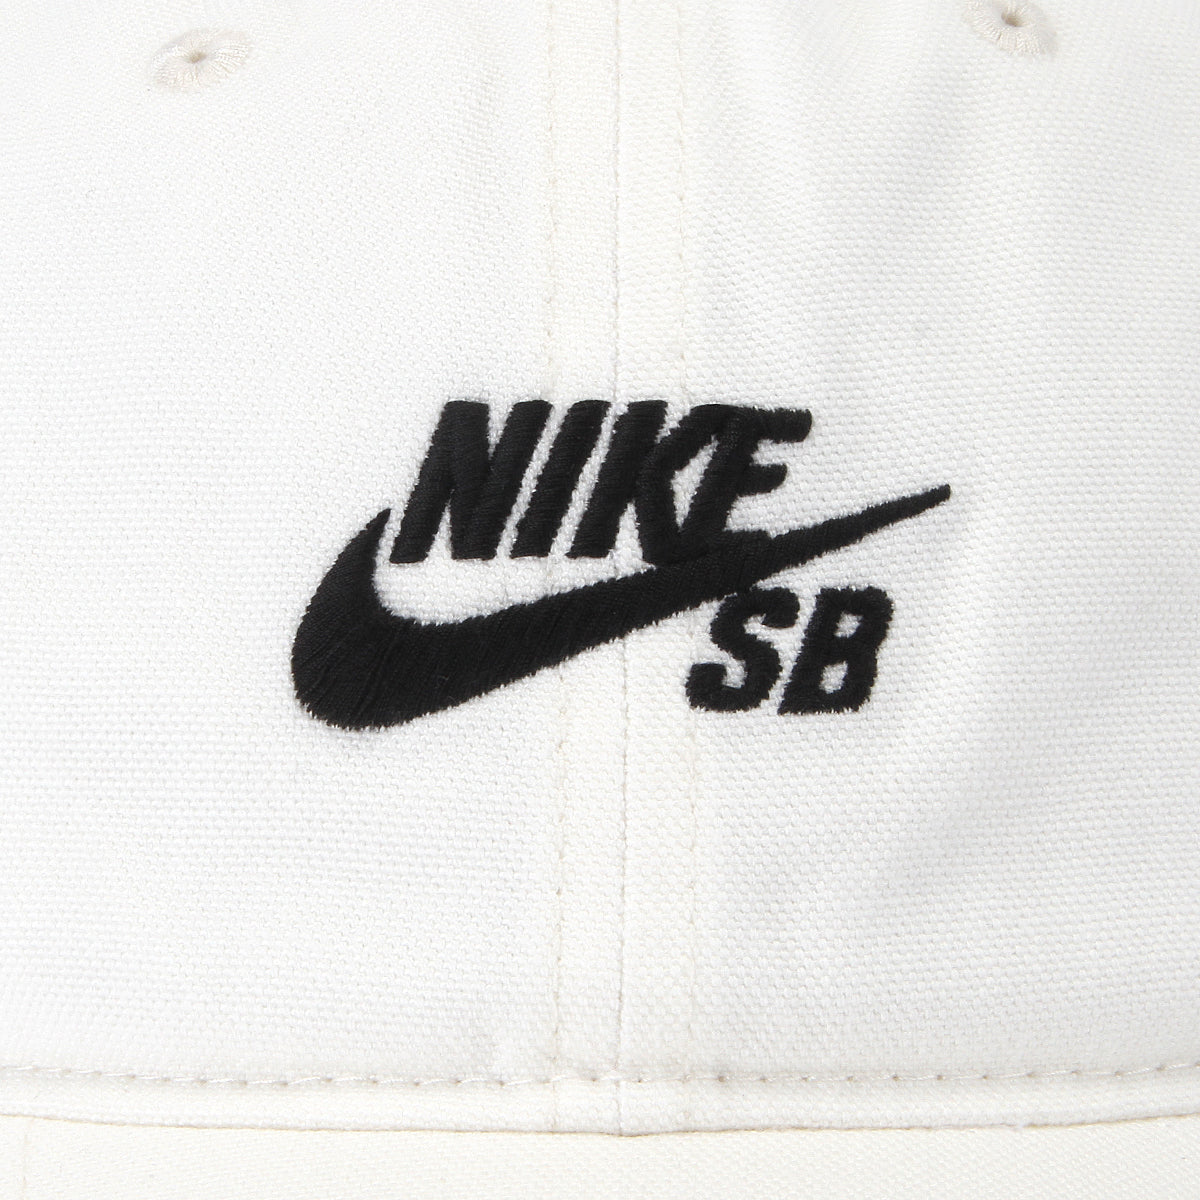 Nike SB | Logo Hat Sail